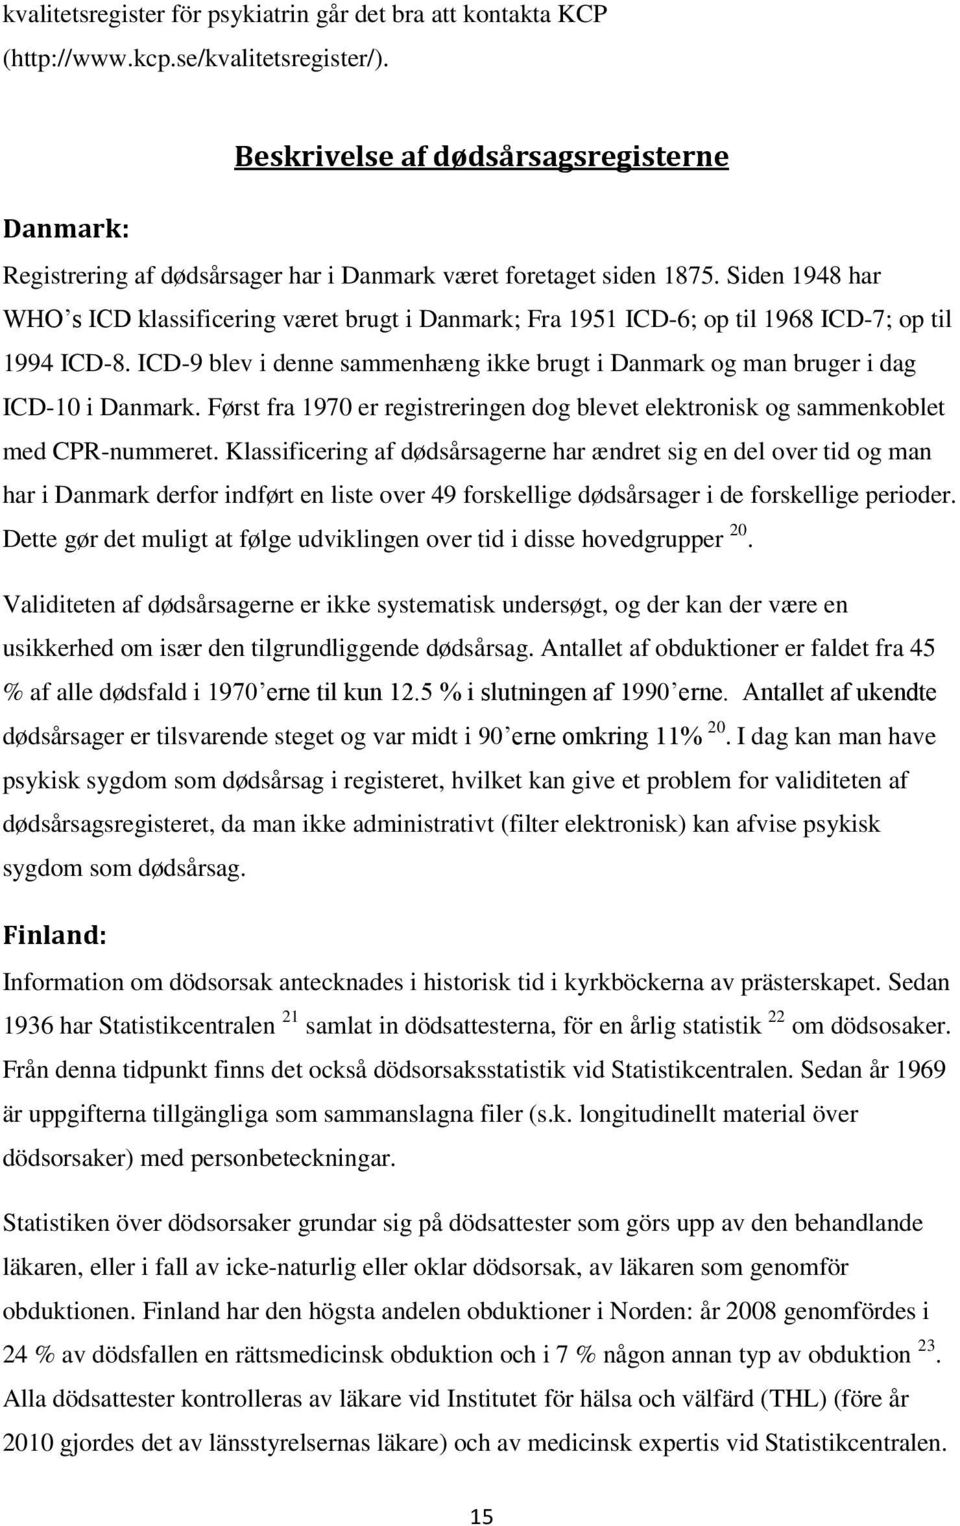 Siden 1948 har WHO s ICD klassificering været brugt i Danmark; Fra 1951 ICD-6; p til 1968 ICD-7; p til 1994 ICD-8.